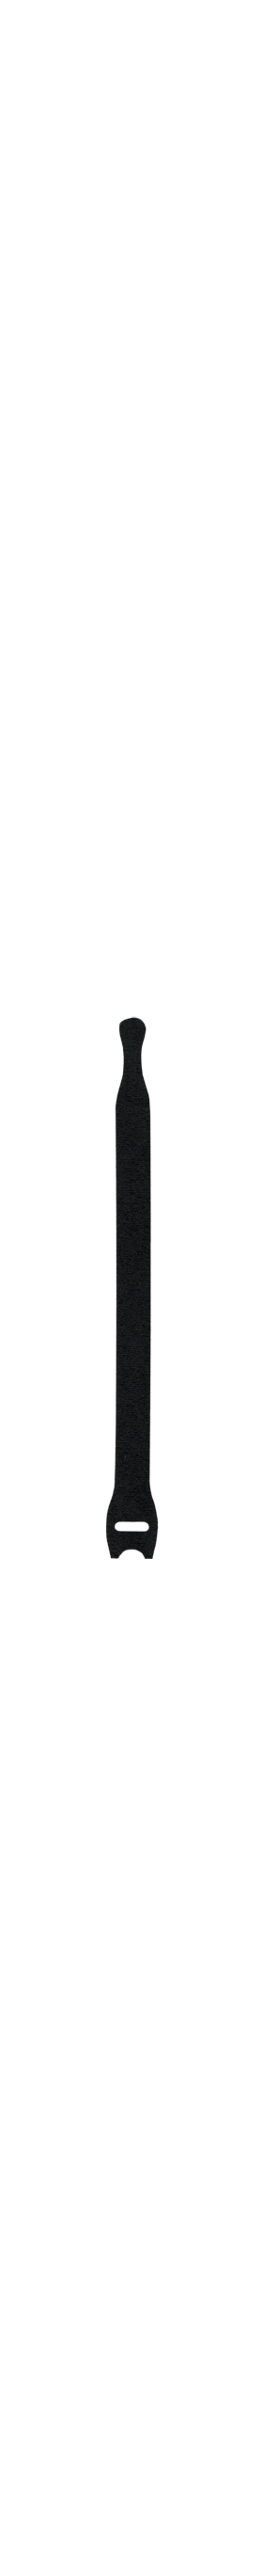 3/4 x 8 VELCRO® Brand ONE WRAP® Strap - 900 Per Roll